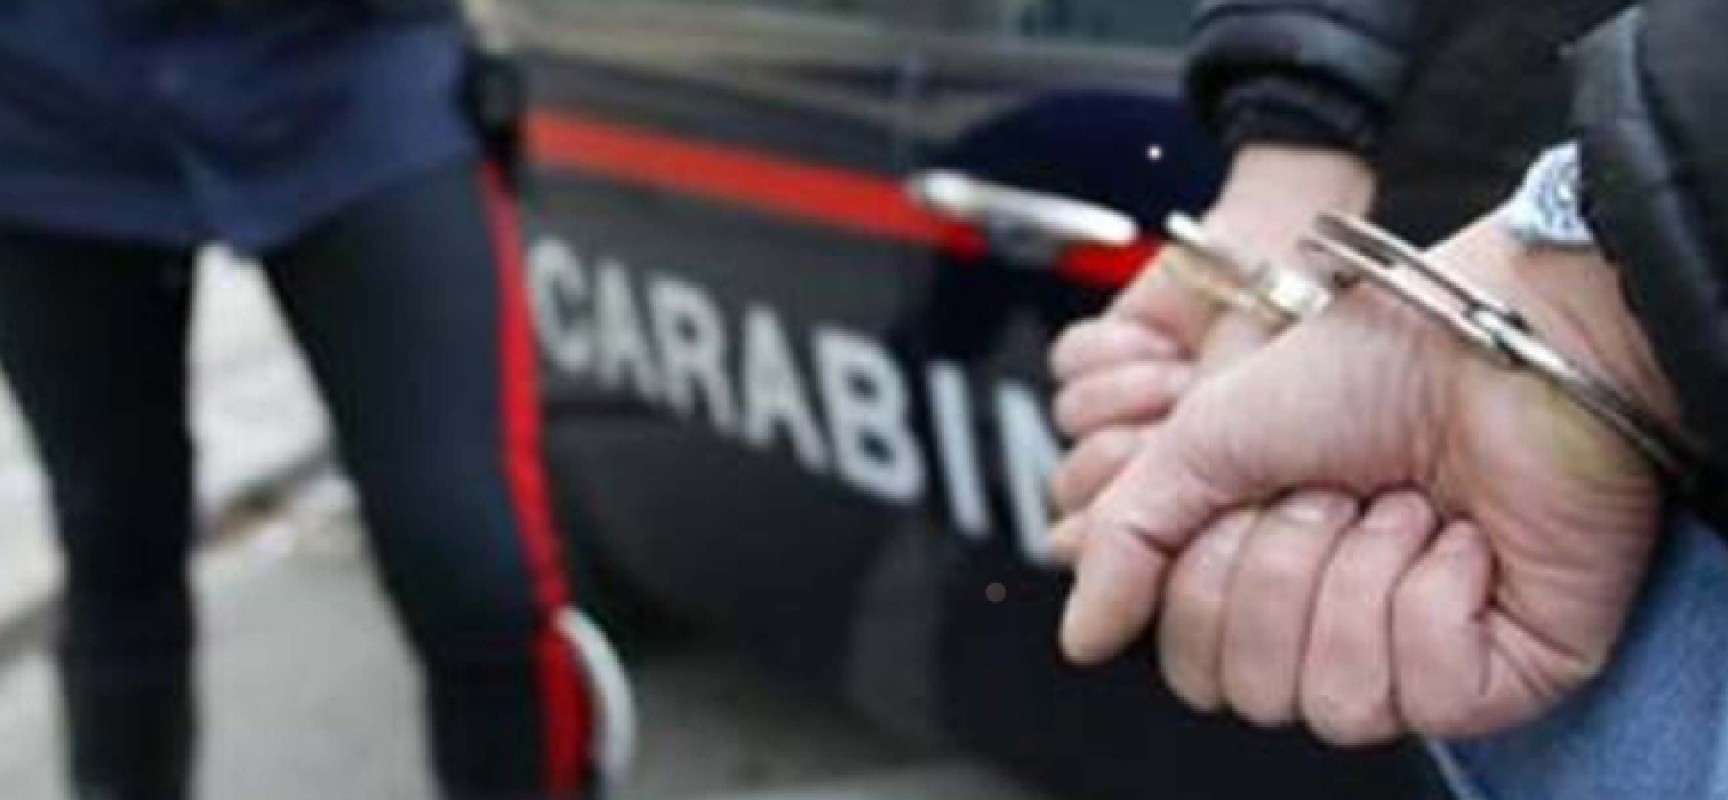 Fermato con otto dosi di cocaina in tasca, Carabinieri arrestano 38enne biscegliese